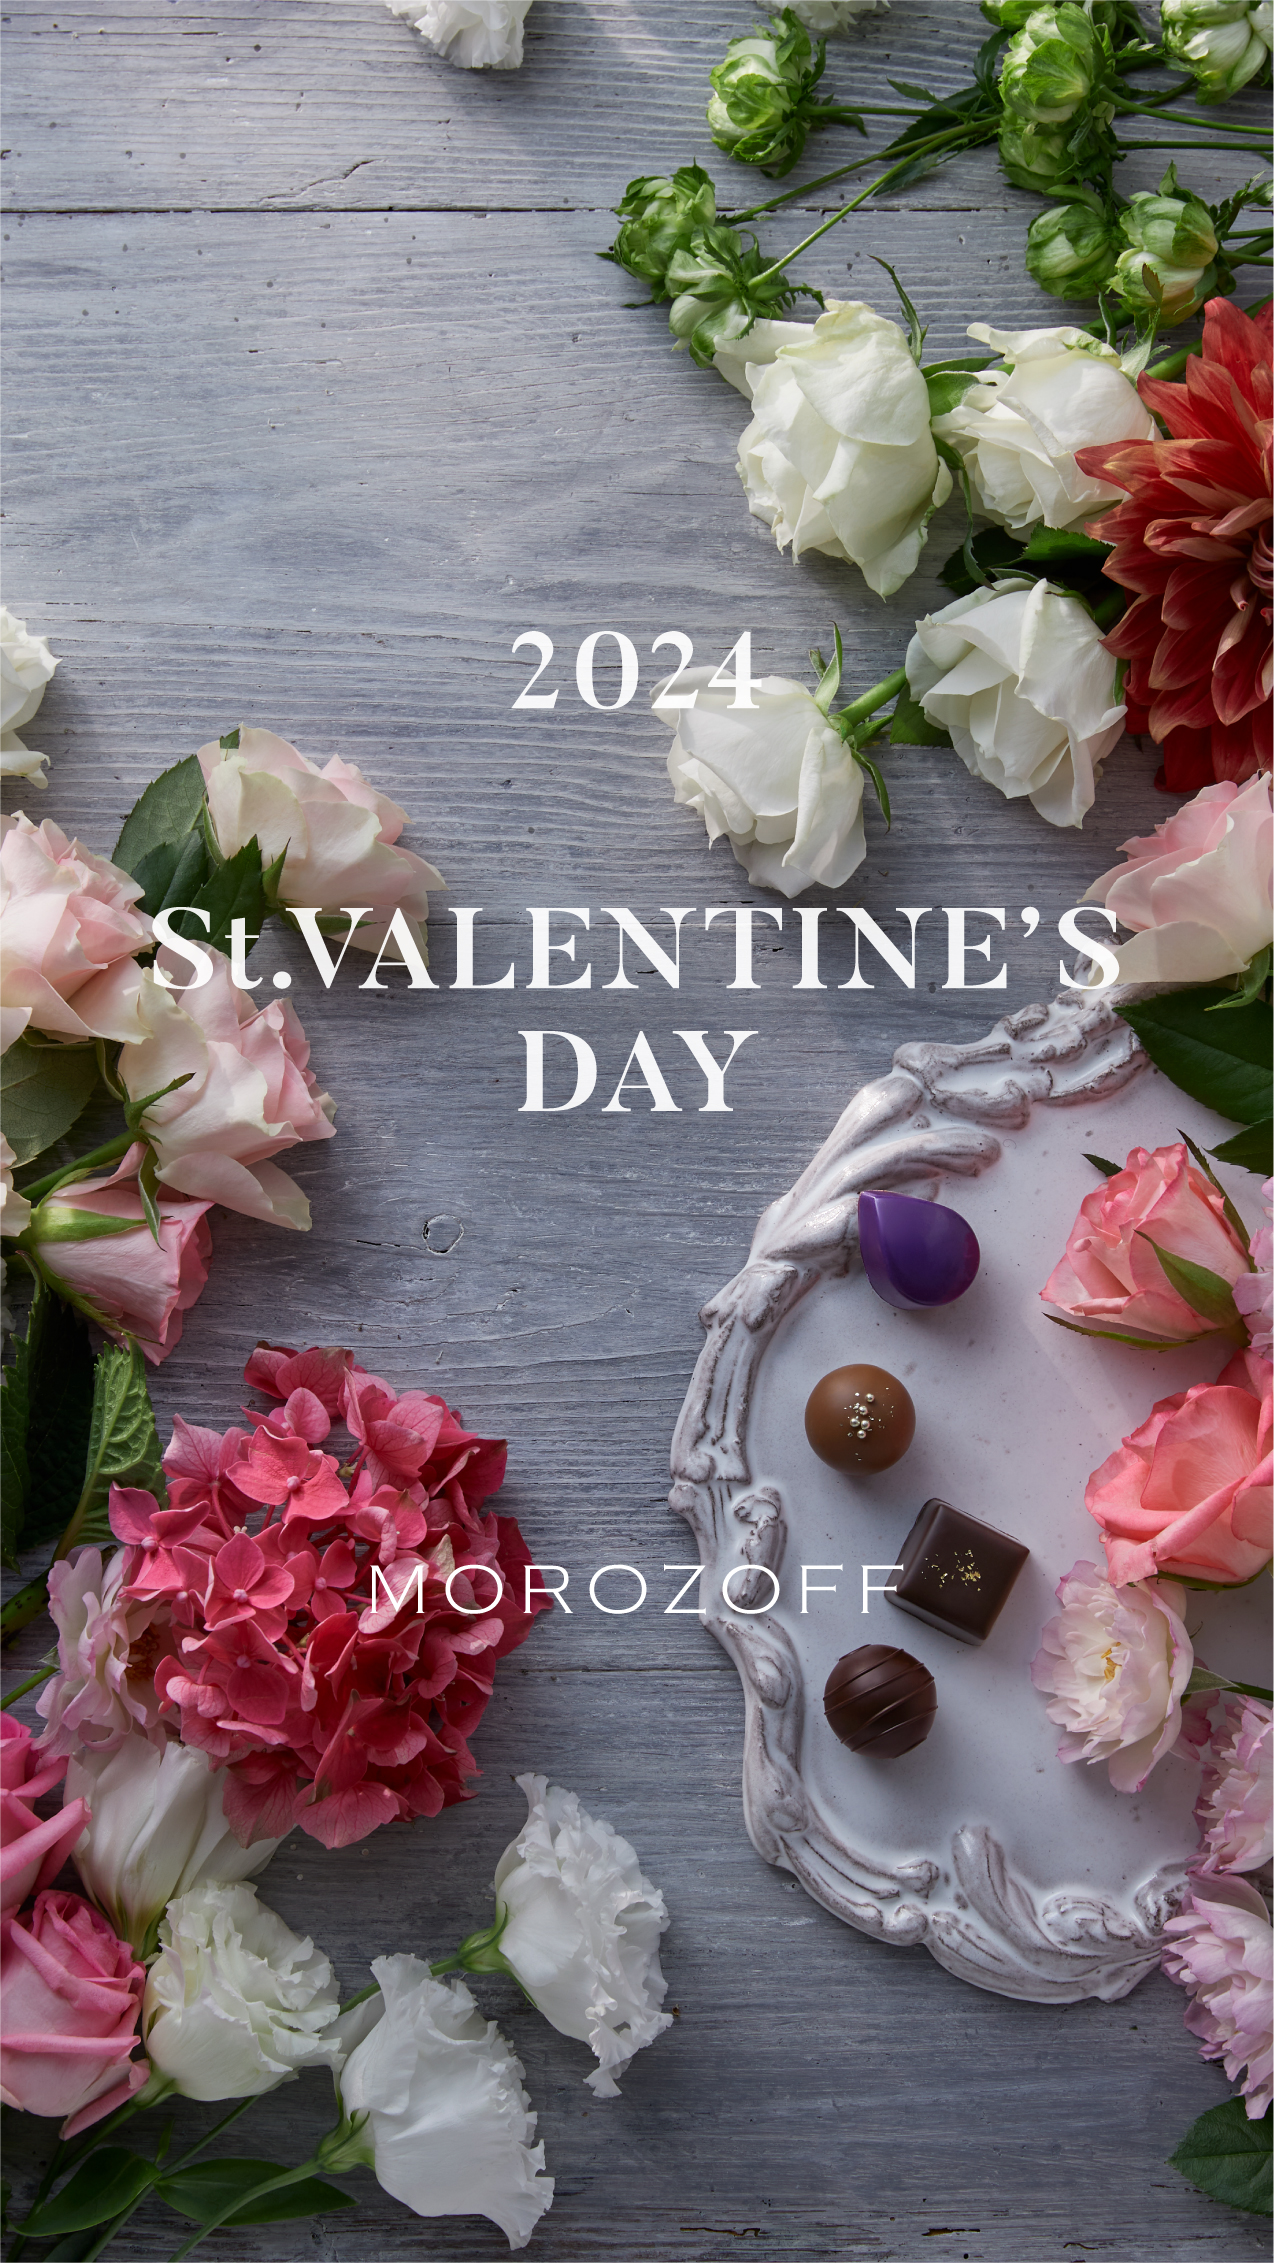 心を満たす、甘いチョコレート A special day,many sweet delights. MOROZOFF 2024 ST.VALENTINE'S DAY